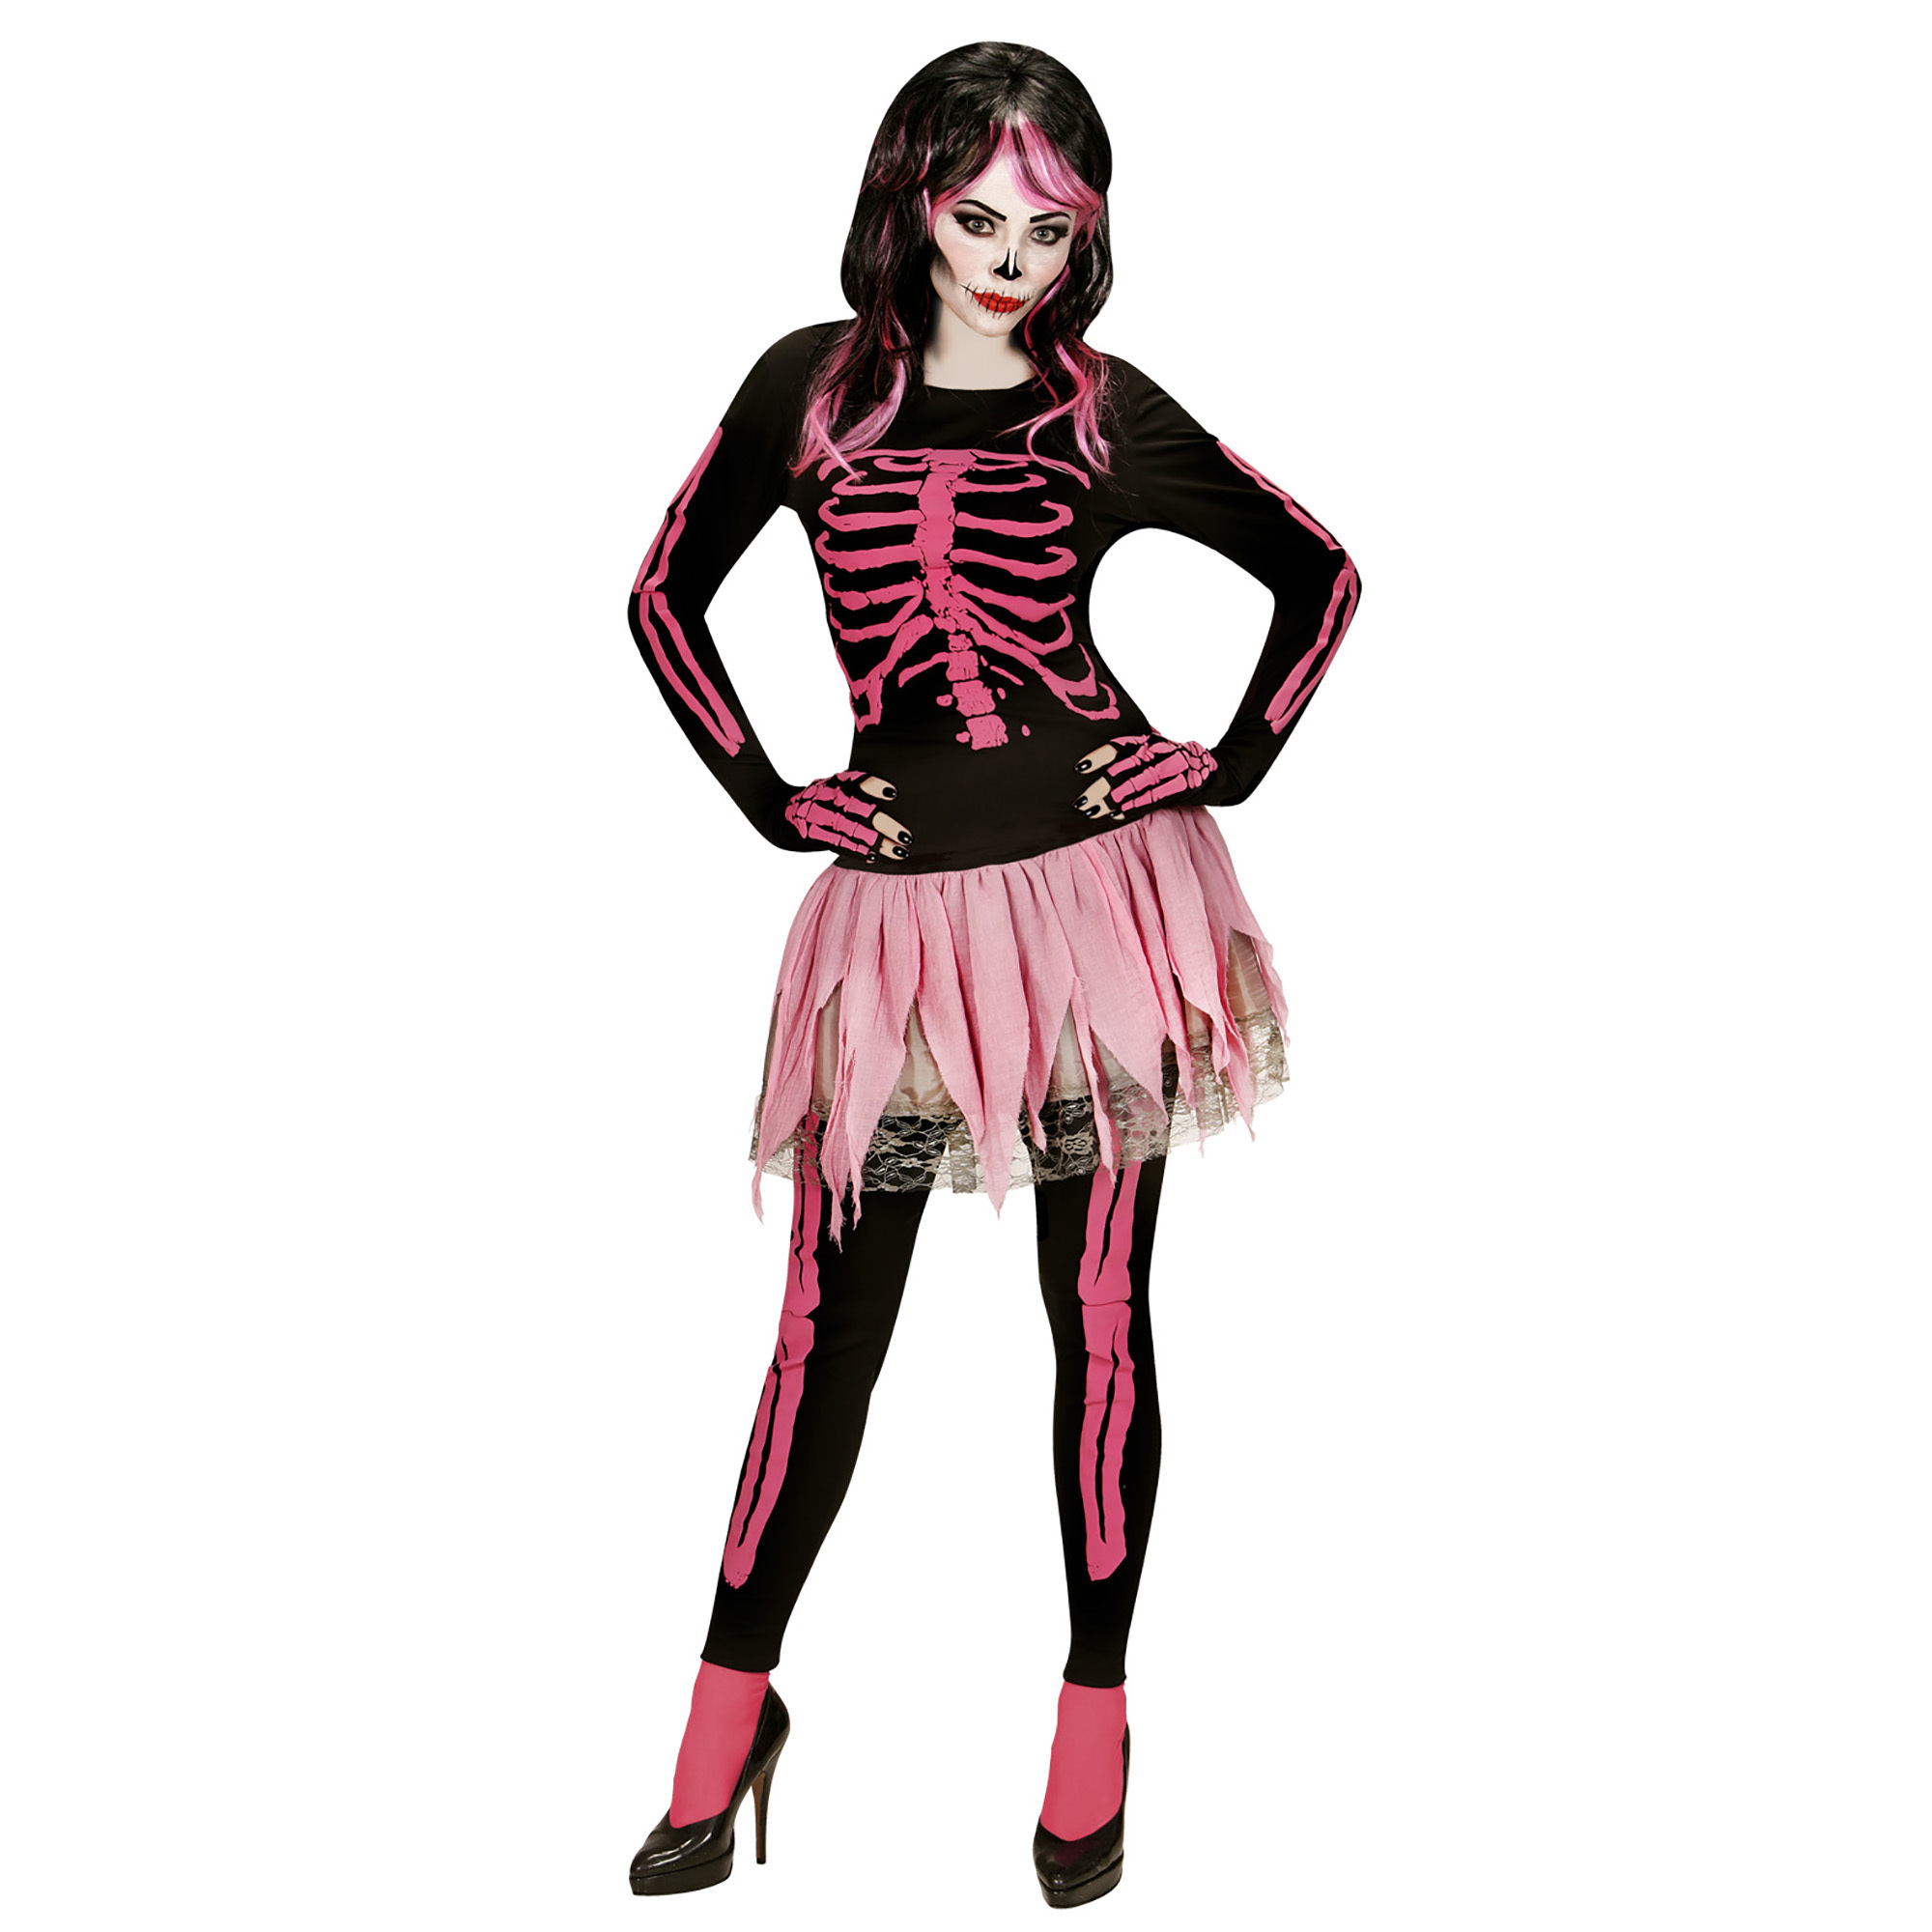 Roze skeletten geraamte outfit dame